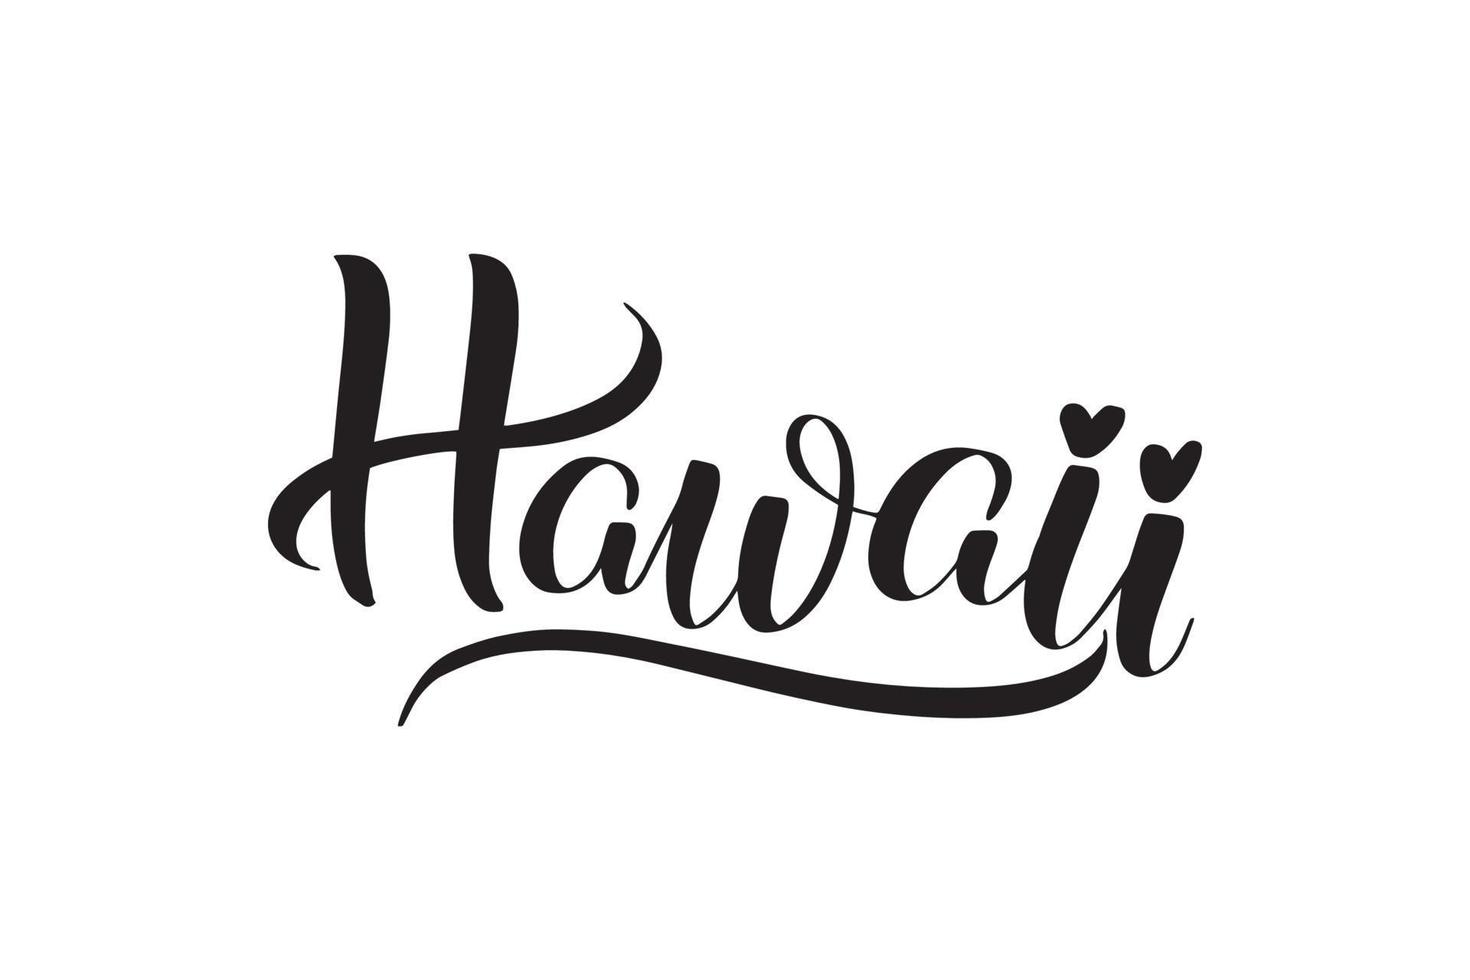 ispirazione scritta a mano pennello lettering hawaii. illustrazione di calligrafia vettoriale isolata su sfondo bianco. tipografia per striscioni, distintivi, cartoline, magliette, stampe, poster.